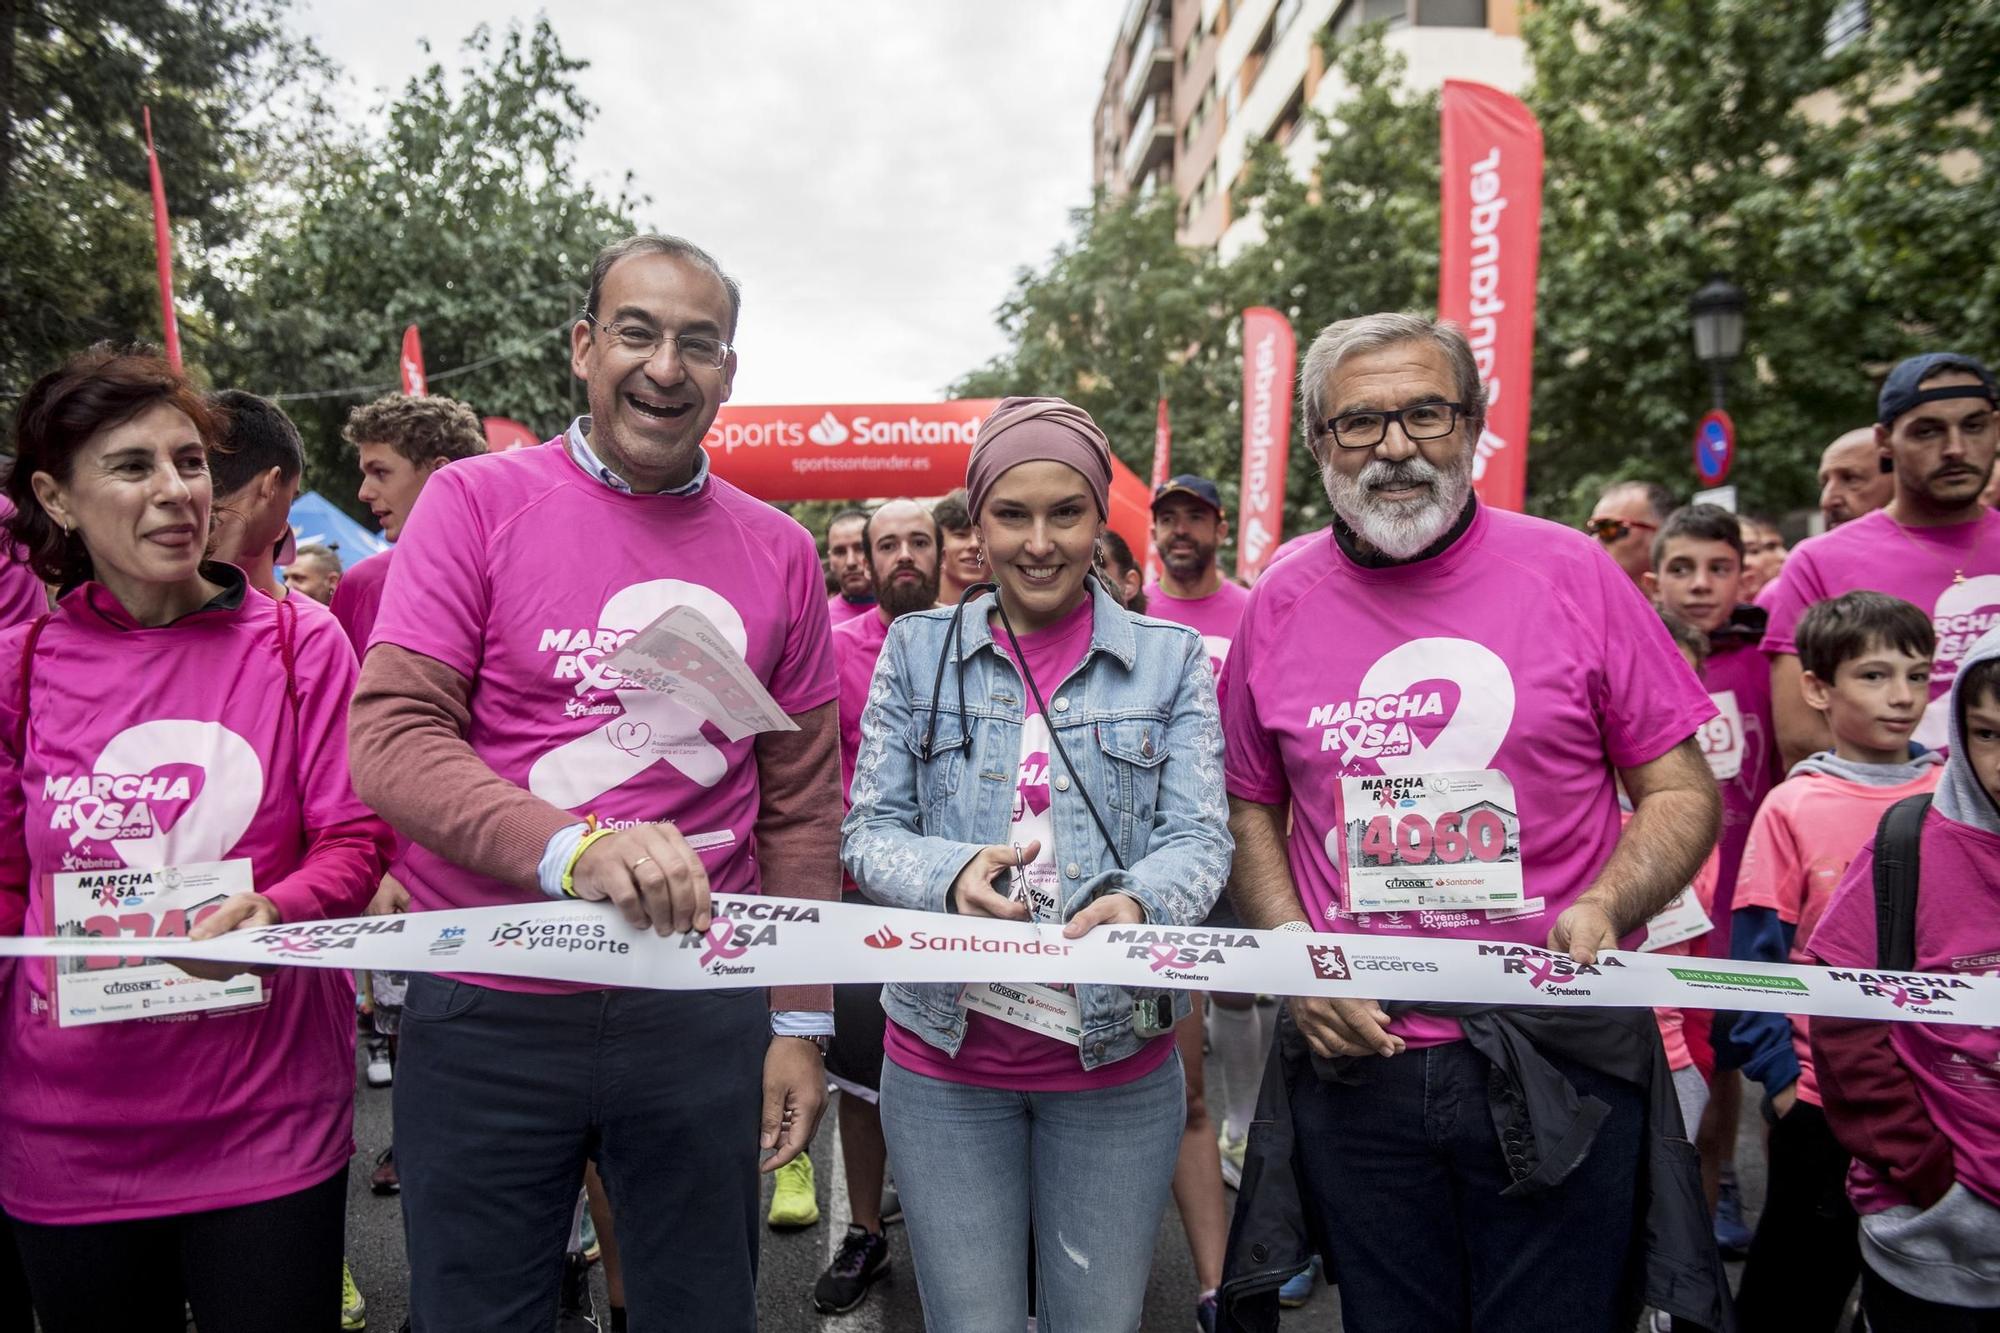 GALERÍA | Así fue la Marcha Rosa contra el cáncer en Cáceres